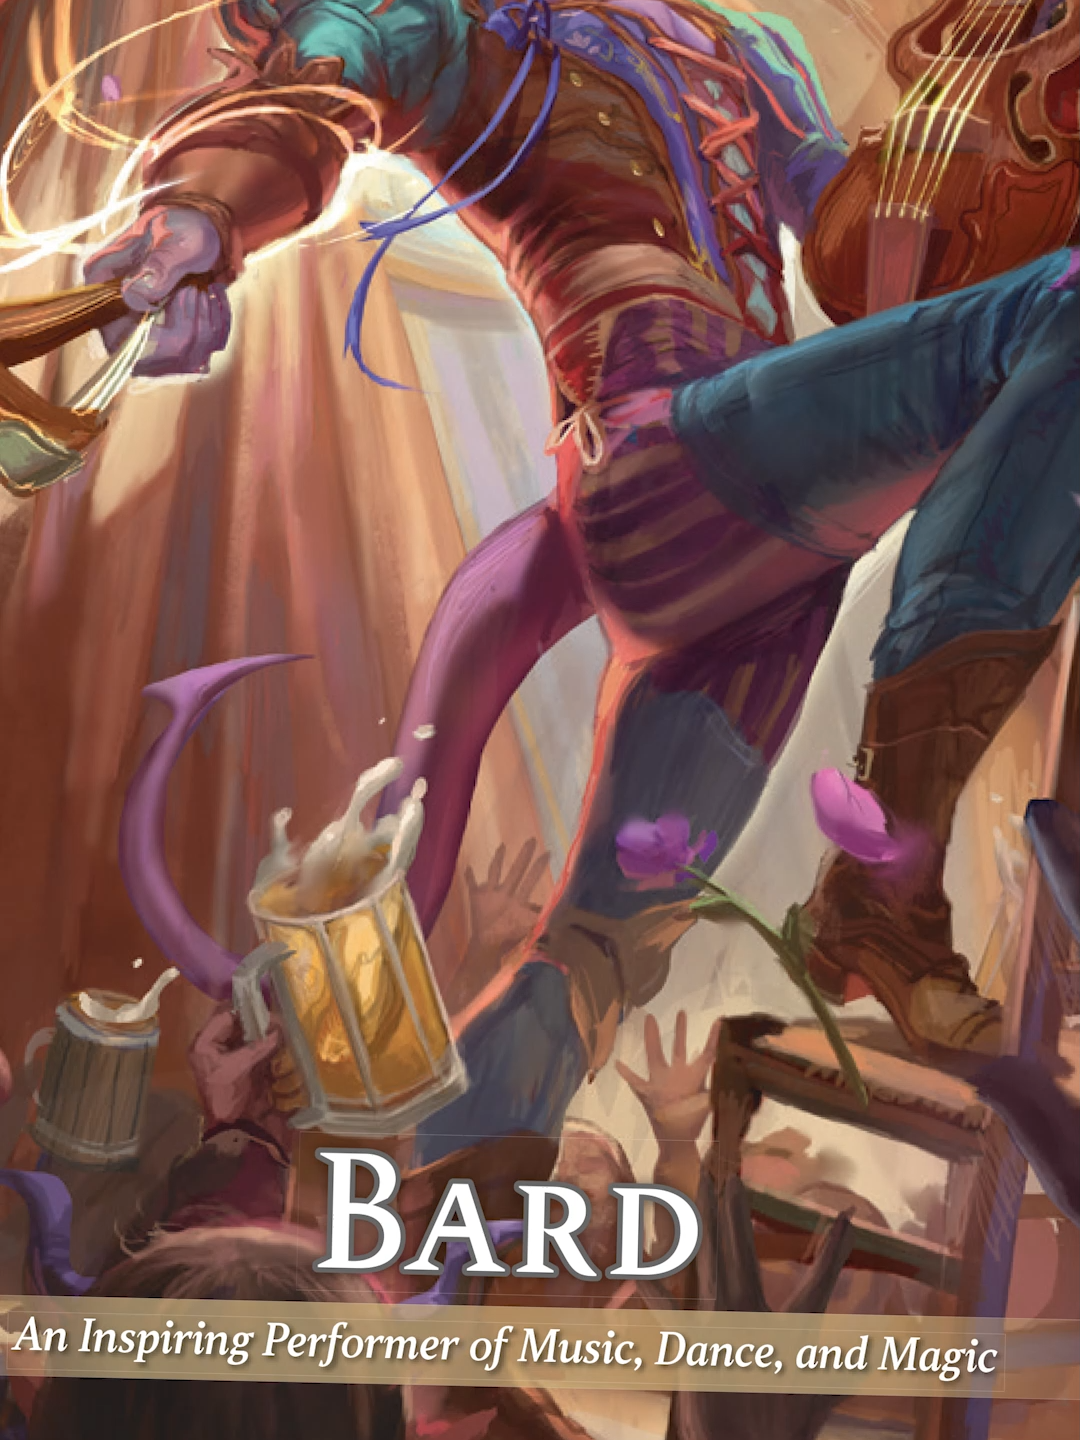 The Bard: An Inspiring Performer of Music, Dance and Magic. #dnd #dndtiktok #dndtok #dungeonsanddragons #bard